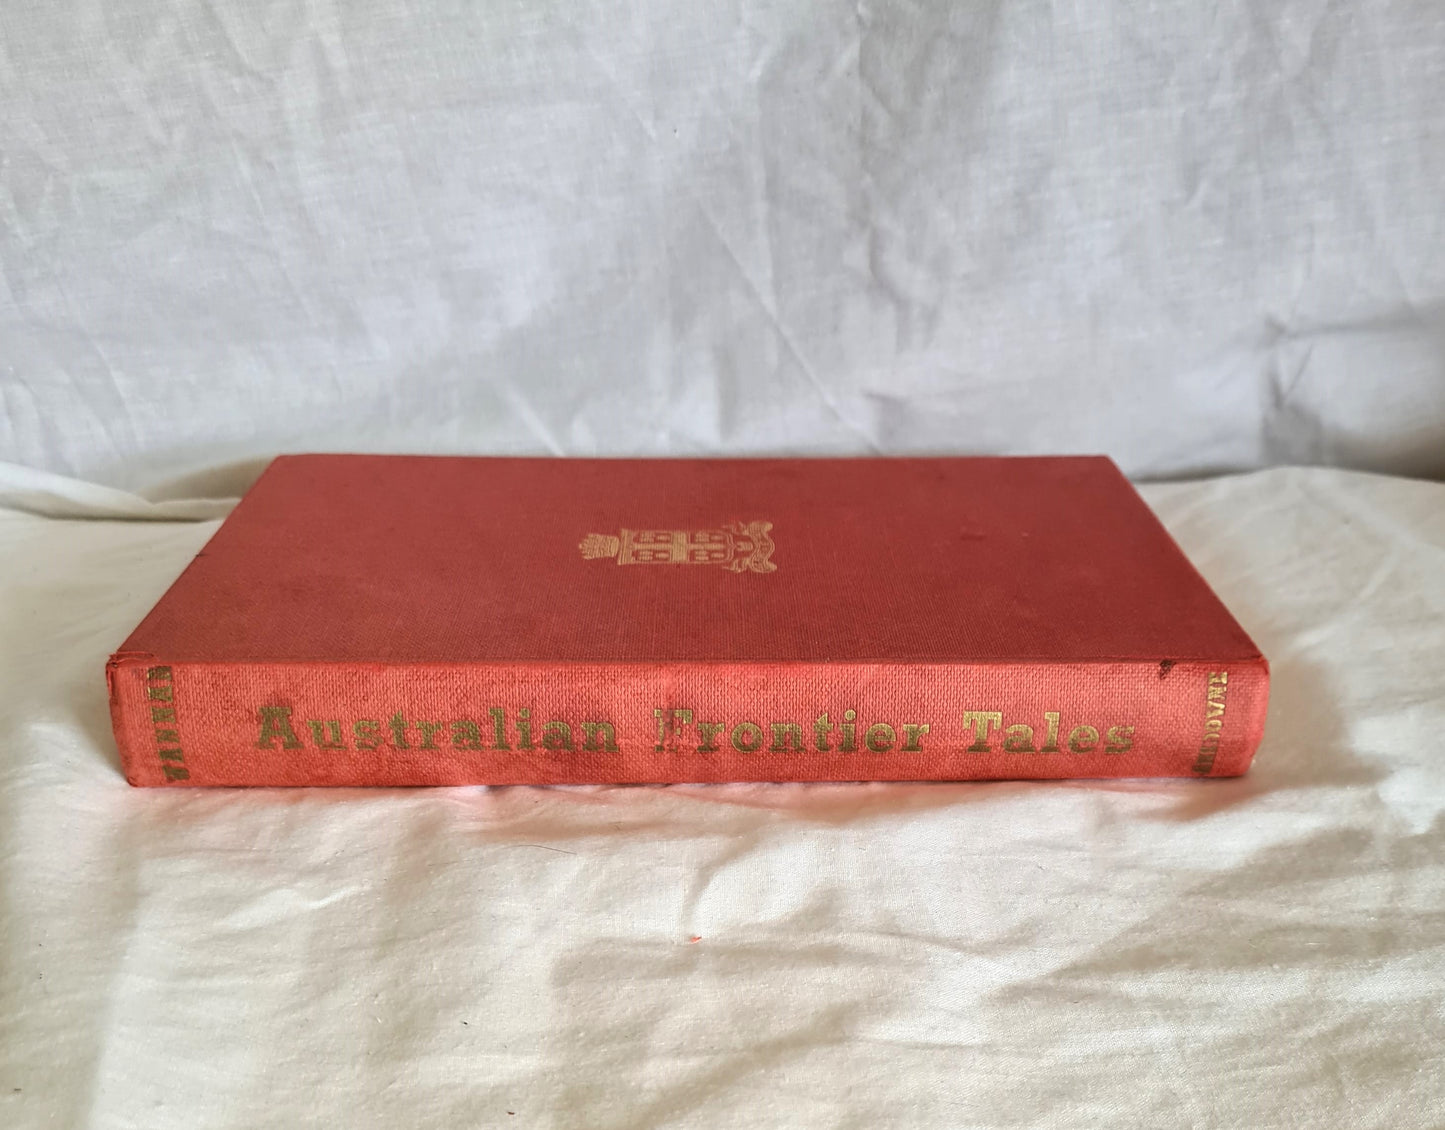 A Treasury of Australian Frontier Tales by Bill Wannan